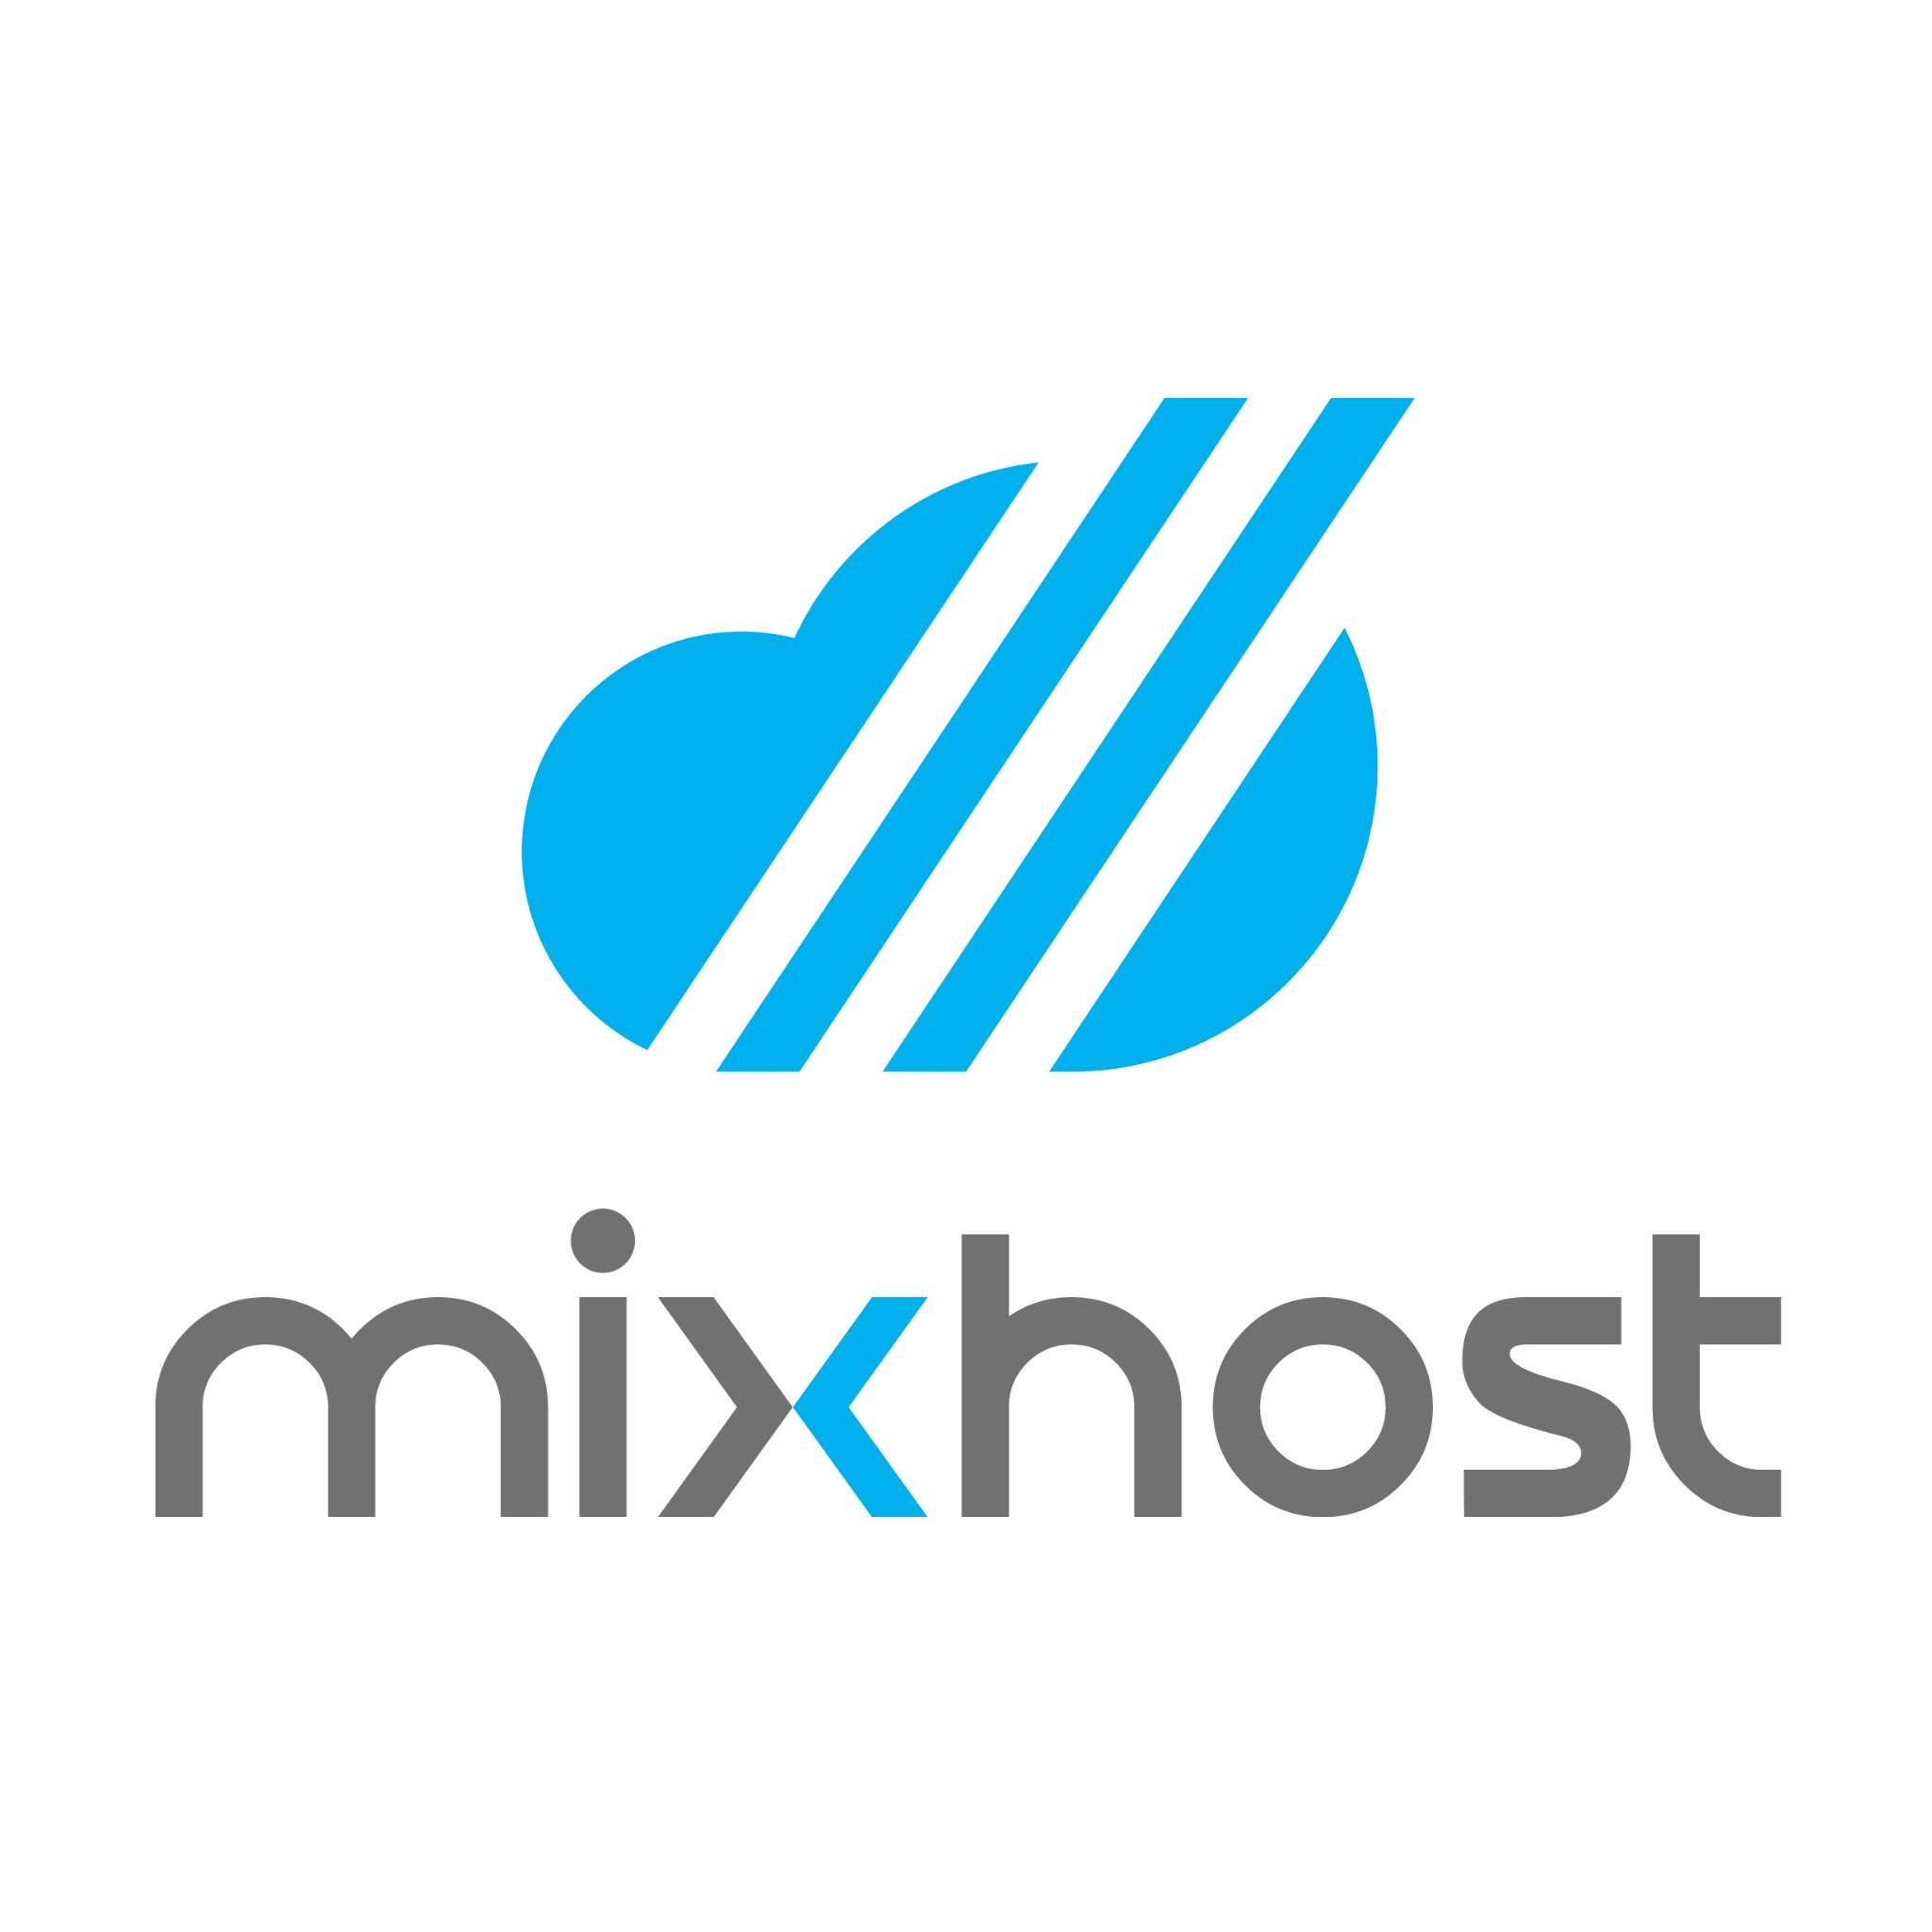 クラウド型レンタルサーバー「mixhost」（ミックスホスト）の公式アカウントです。mixhostのキャンペーン・お得情報や、レンタルサーバーに関するお役立ち情報を発信中。